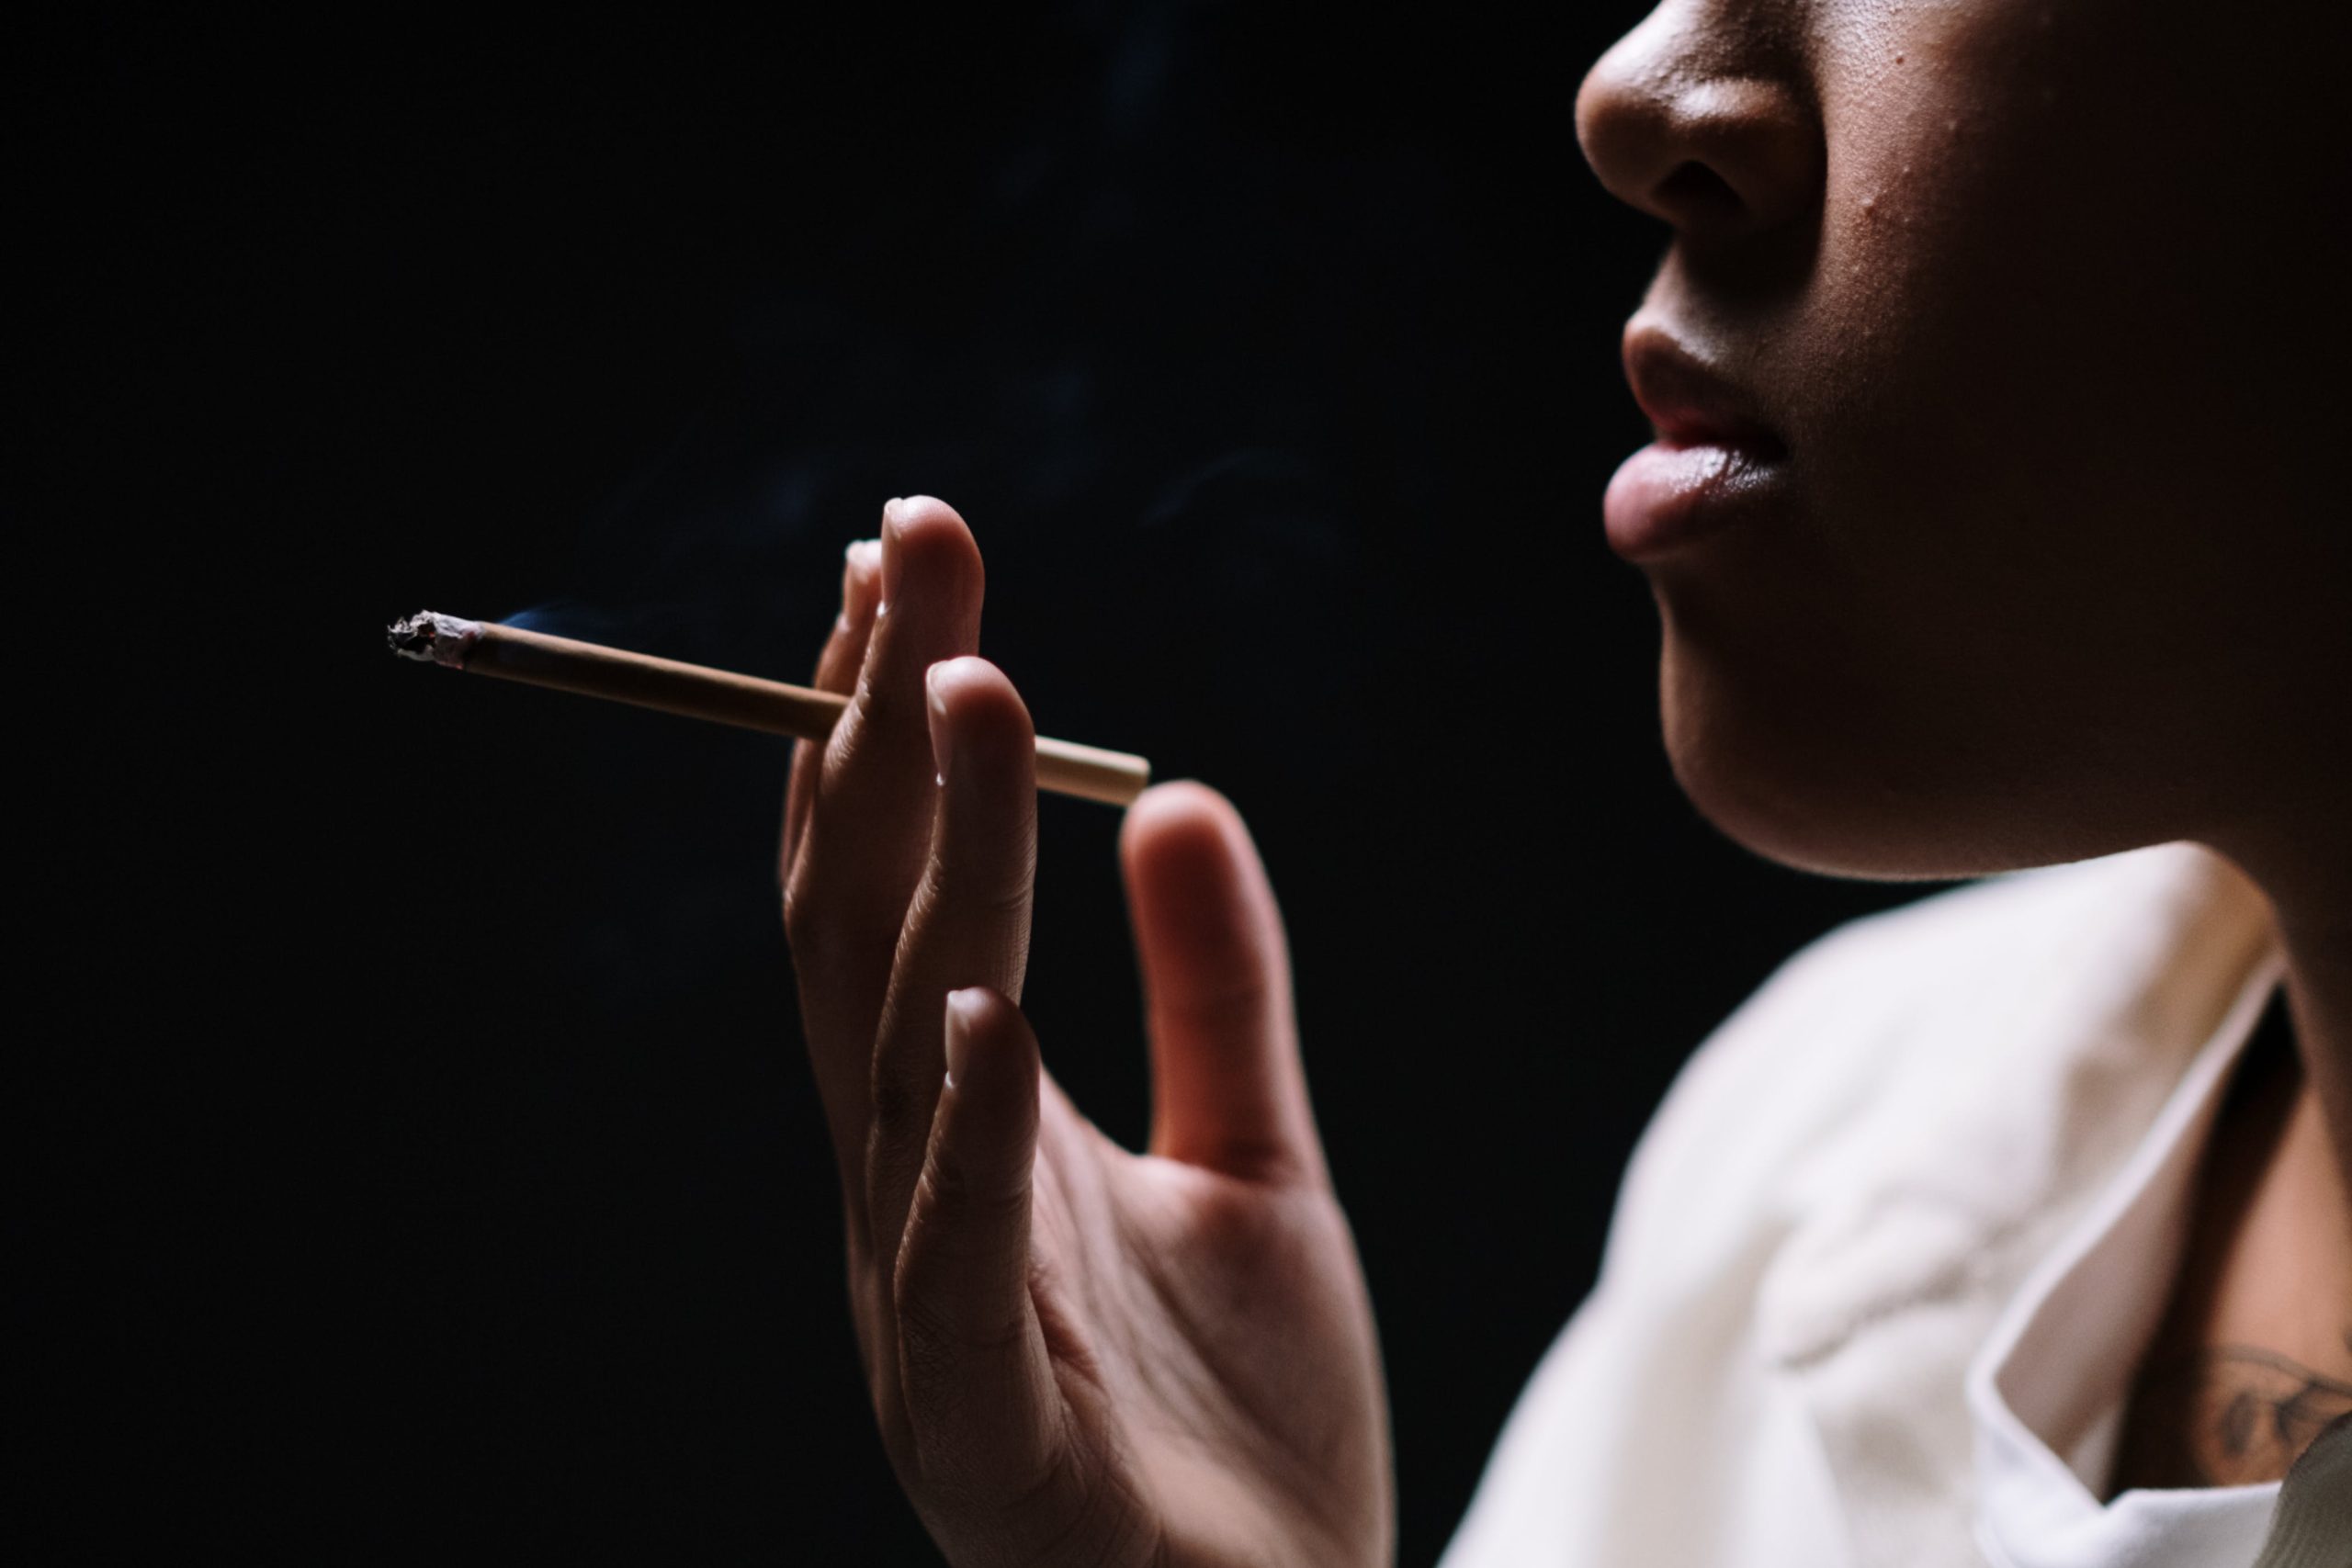 Tabagisme: petites astuces pour arrêter de fumer en douceur